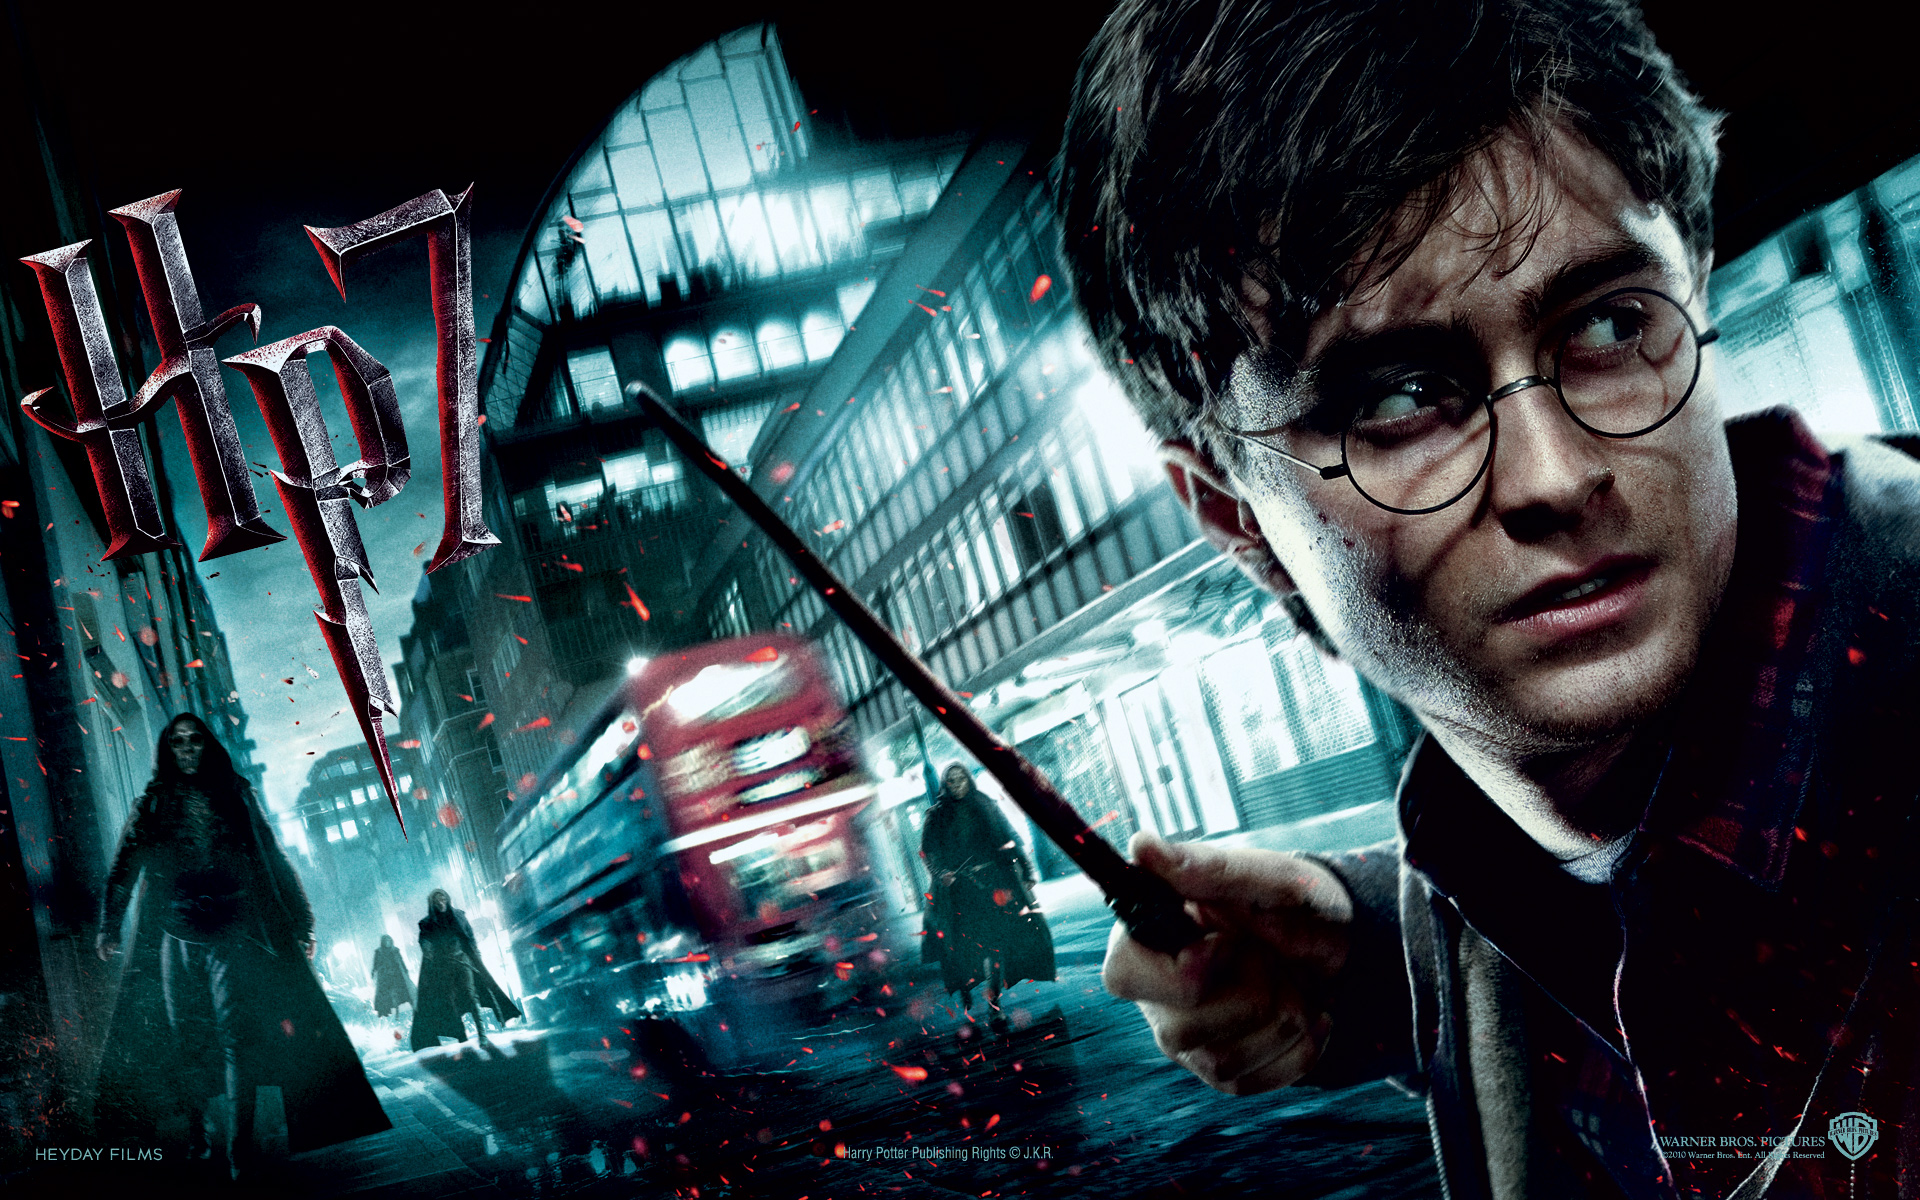  Todas las películas de Harry Potter ordenadas de la peor a la mejor